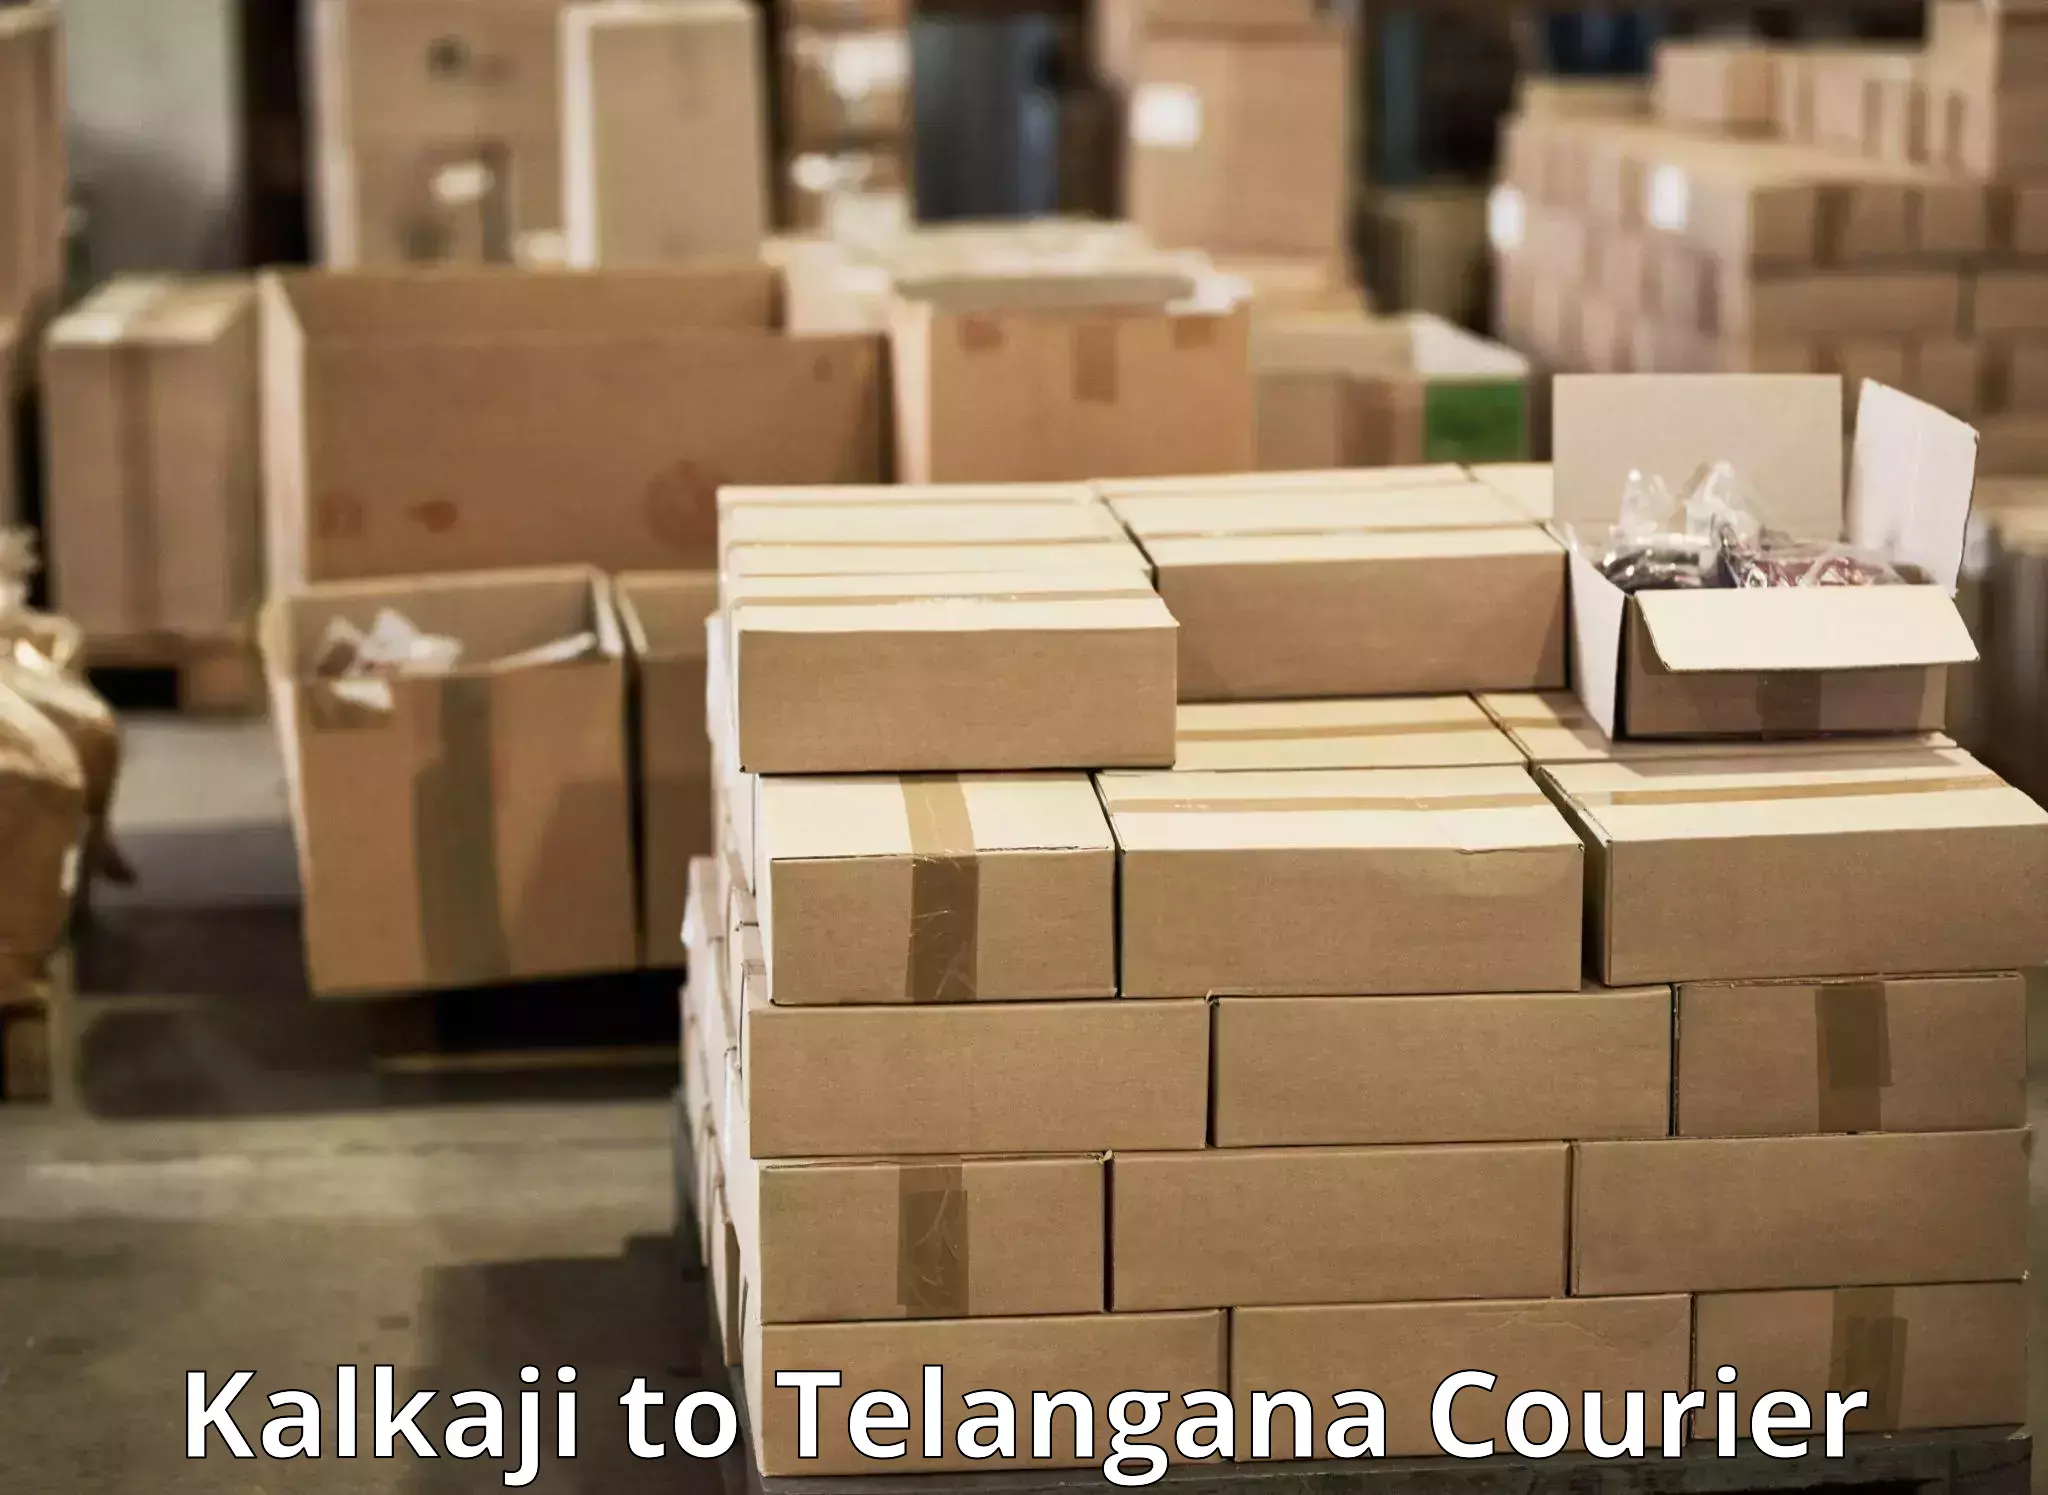 Customized shipping options in Kalkaji to Mudigonda